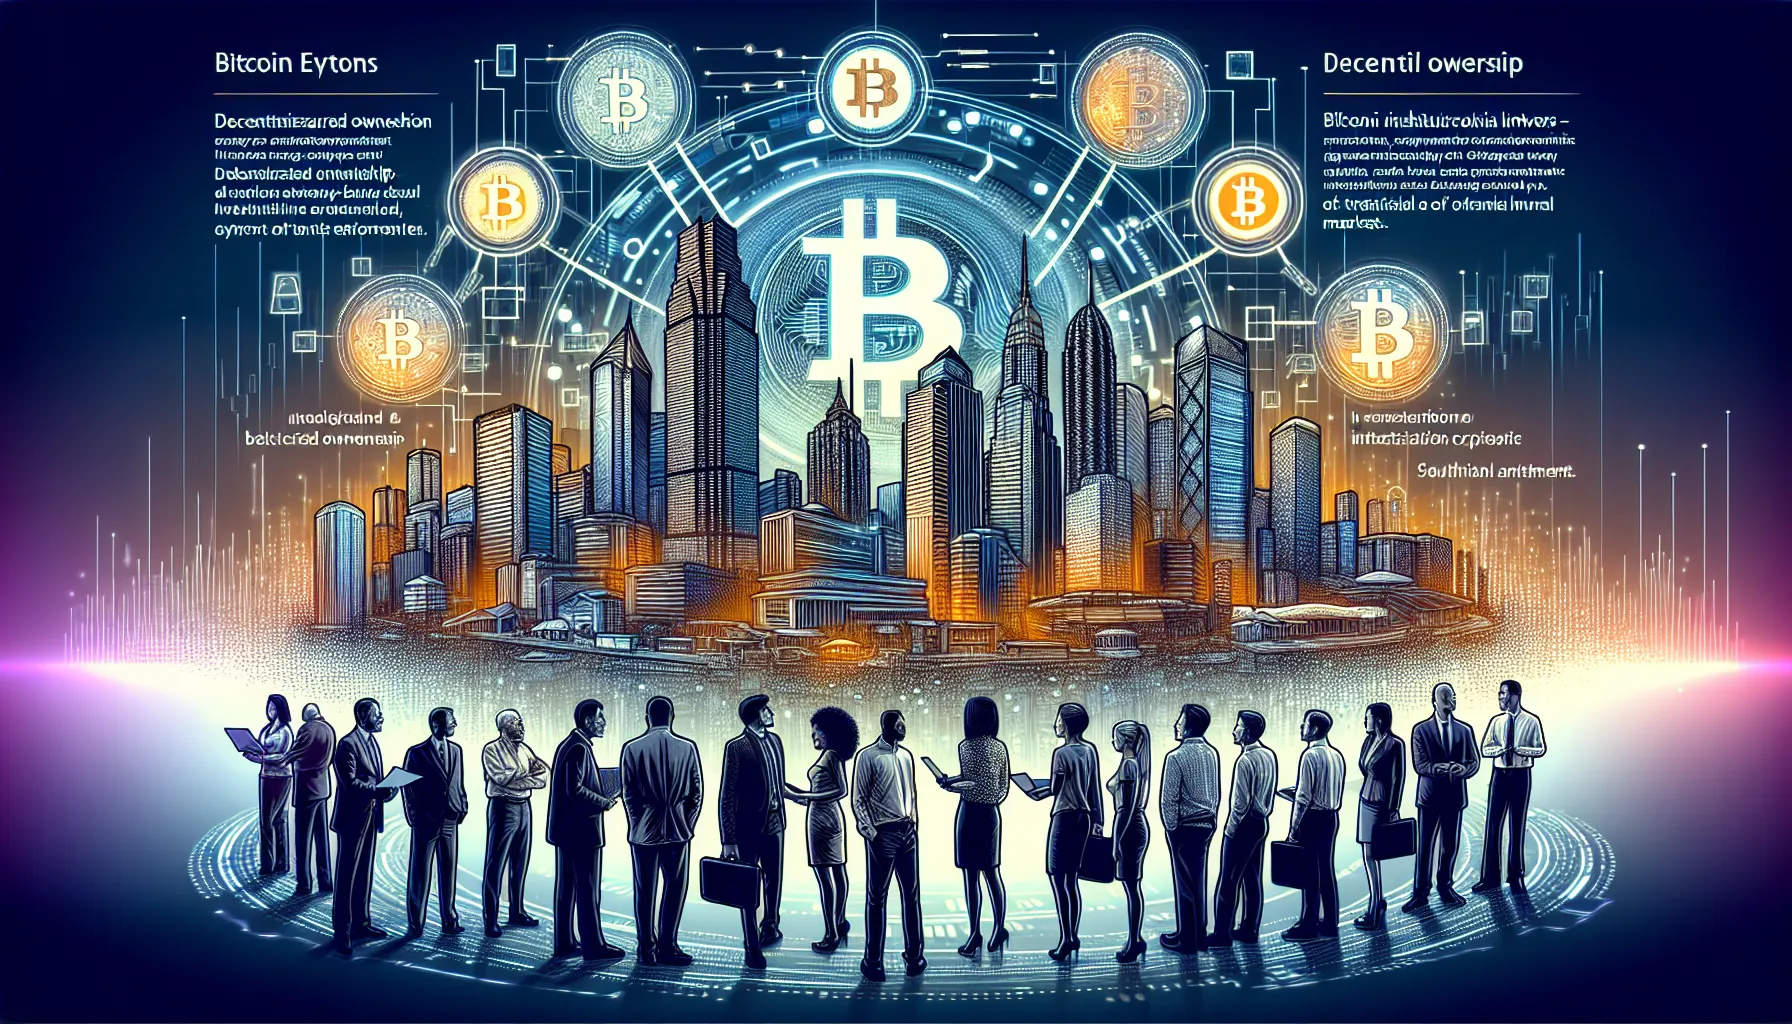 Steigendes Interesse an Bitcoin: Ein tiefer Einblick